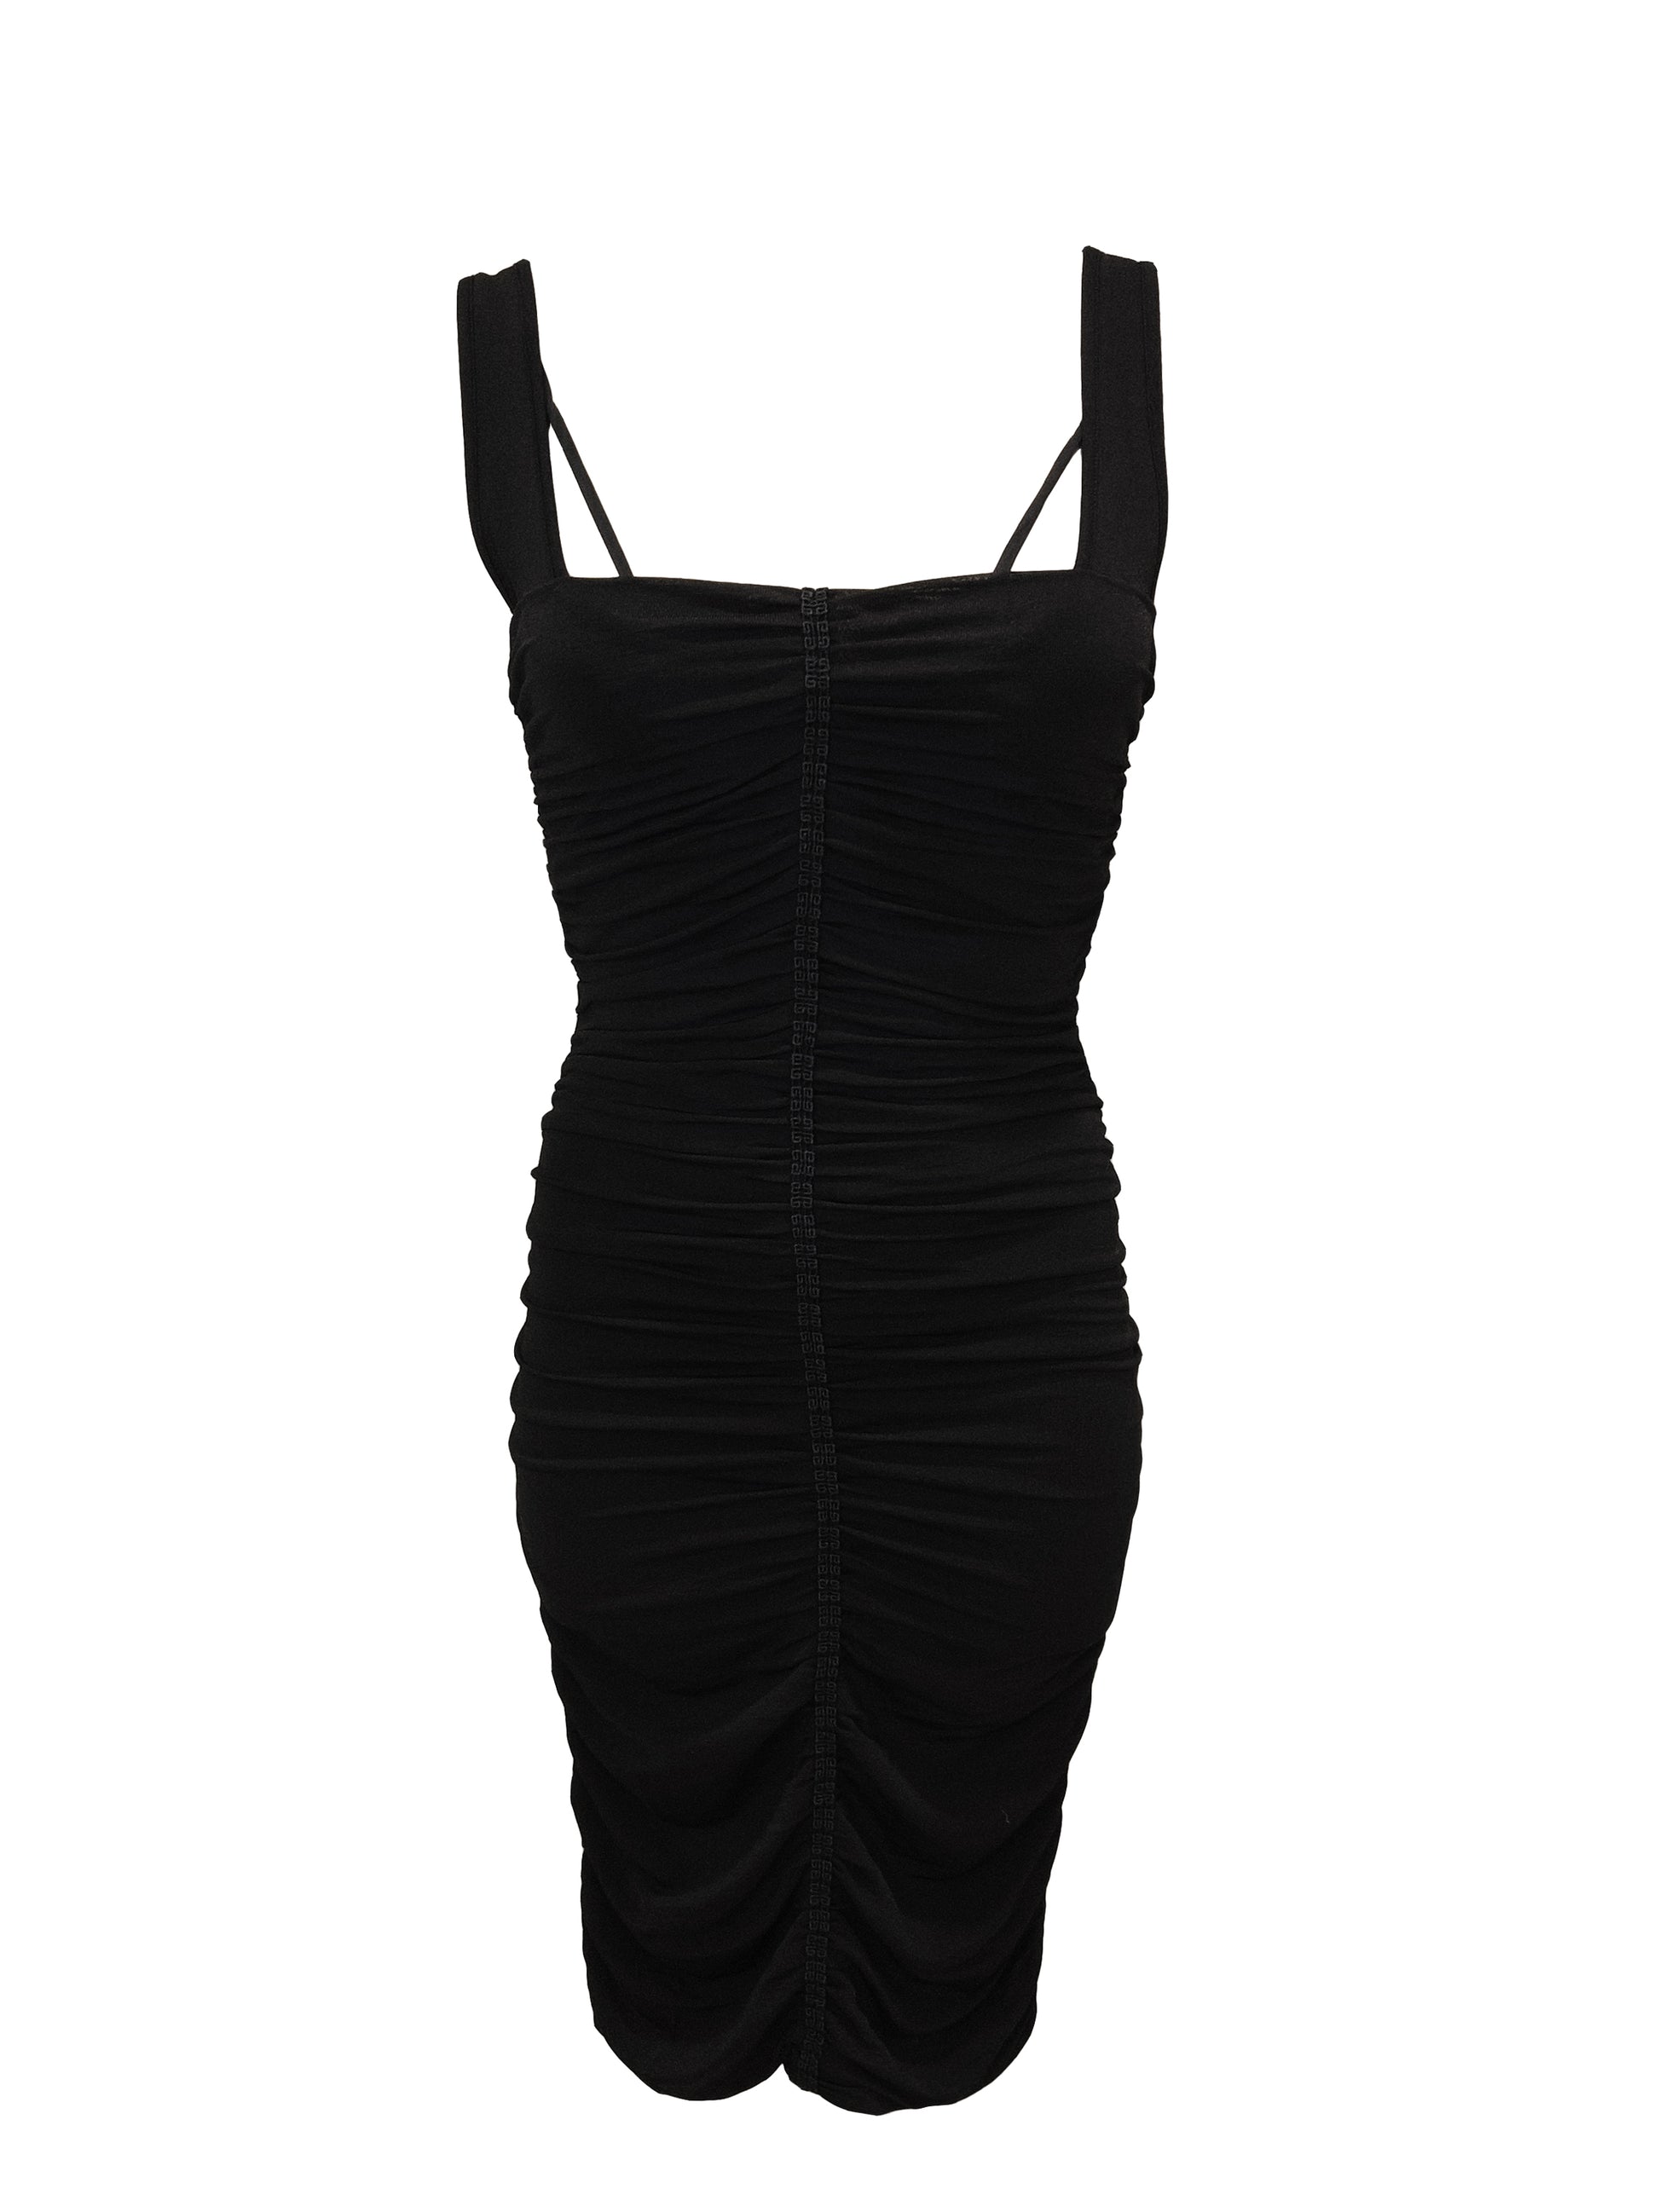 Givenchy Kleid Schwarz  - La Boutique DresdenSchwarzes Kleid mit Trägern an der Vorderseite